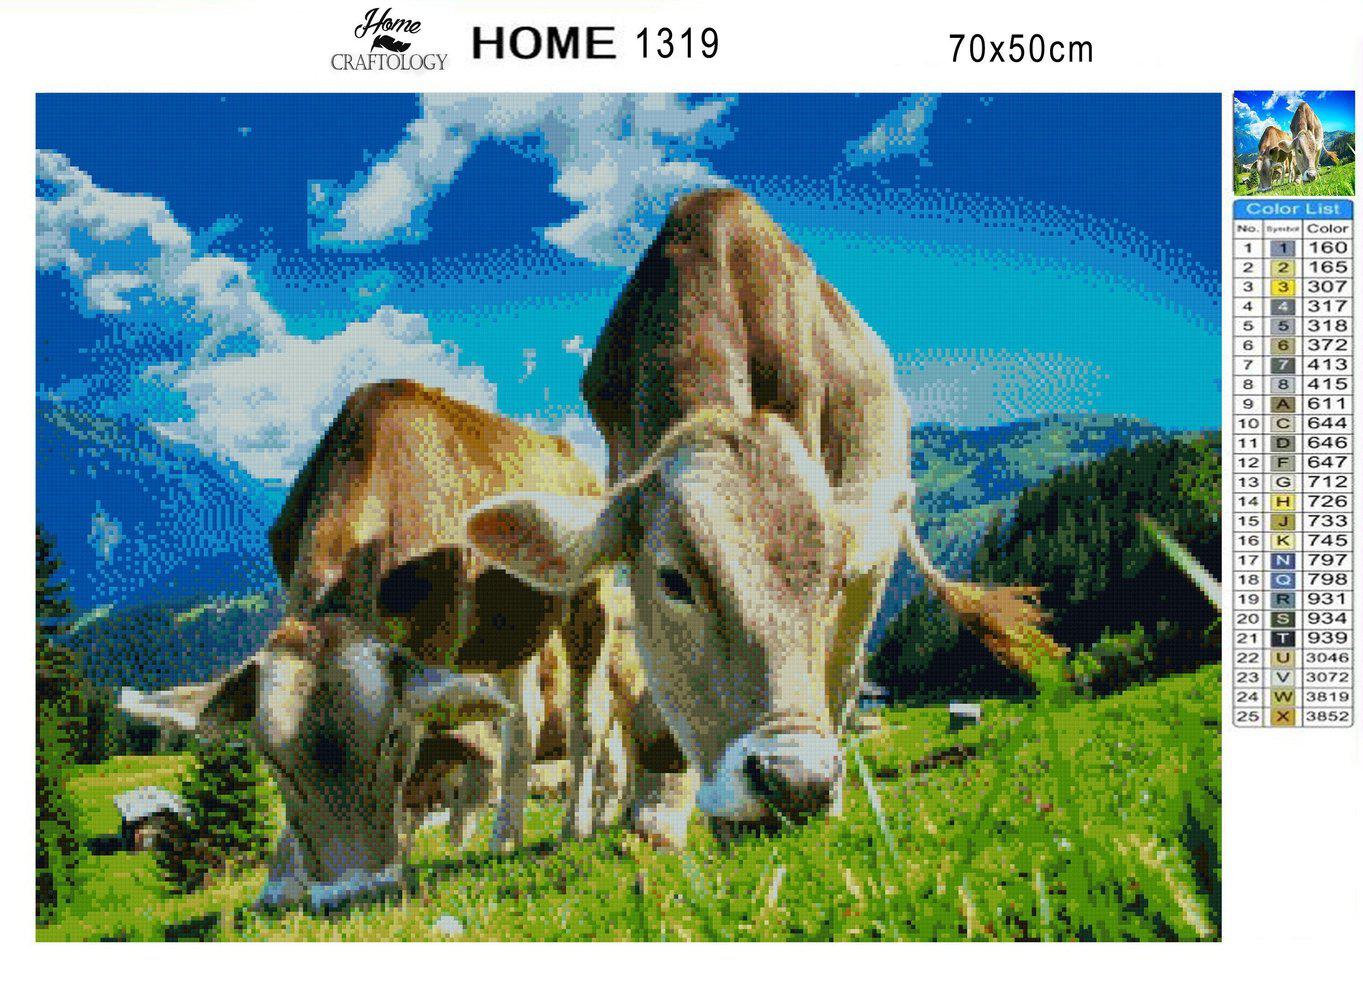 Cows - Premium Diamond Painting Kit